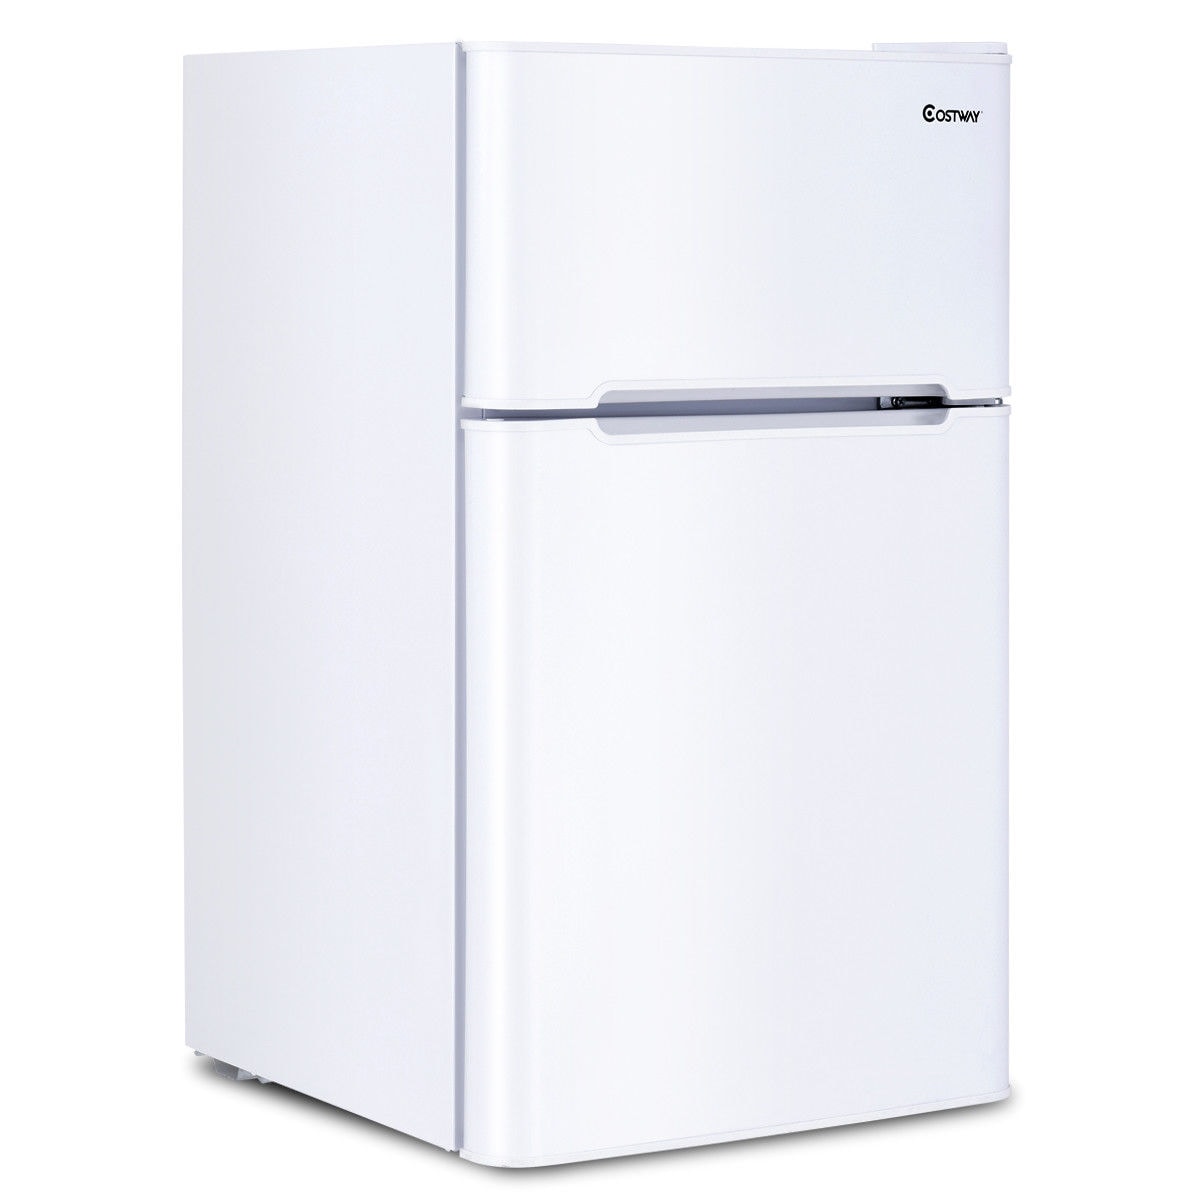 3.2 Cu Ft Mini Fridge Freezer 2-Door Compact Refrigerator Black/Stainless Steel 